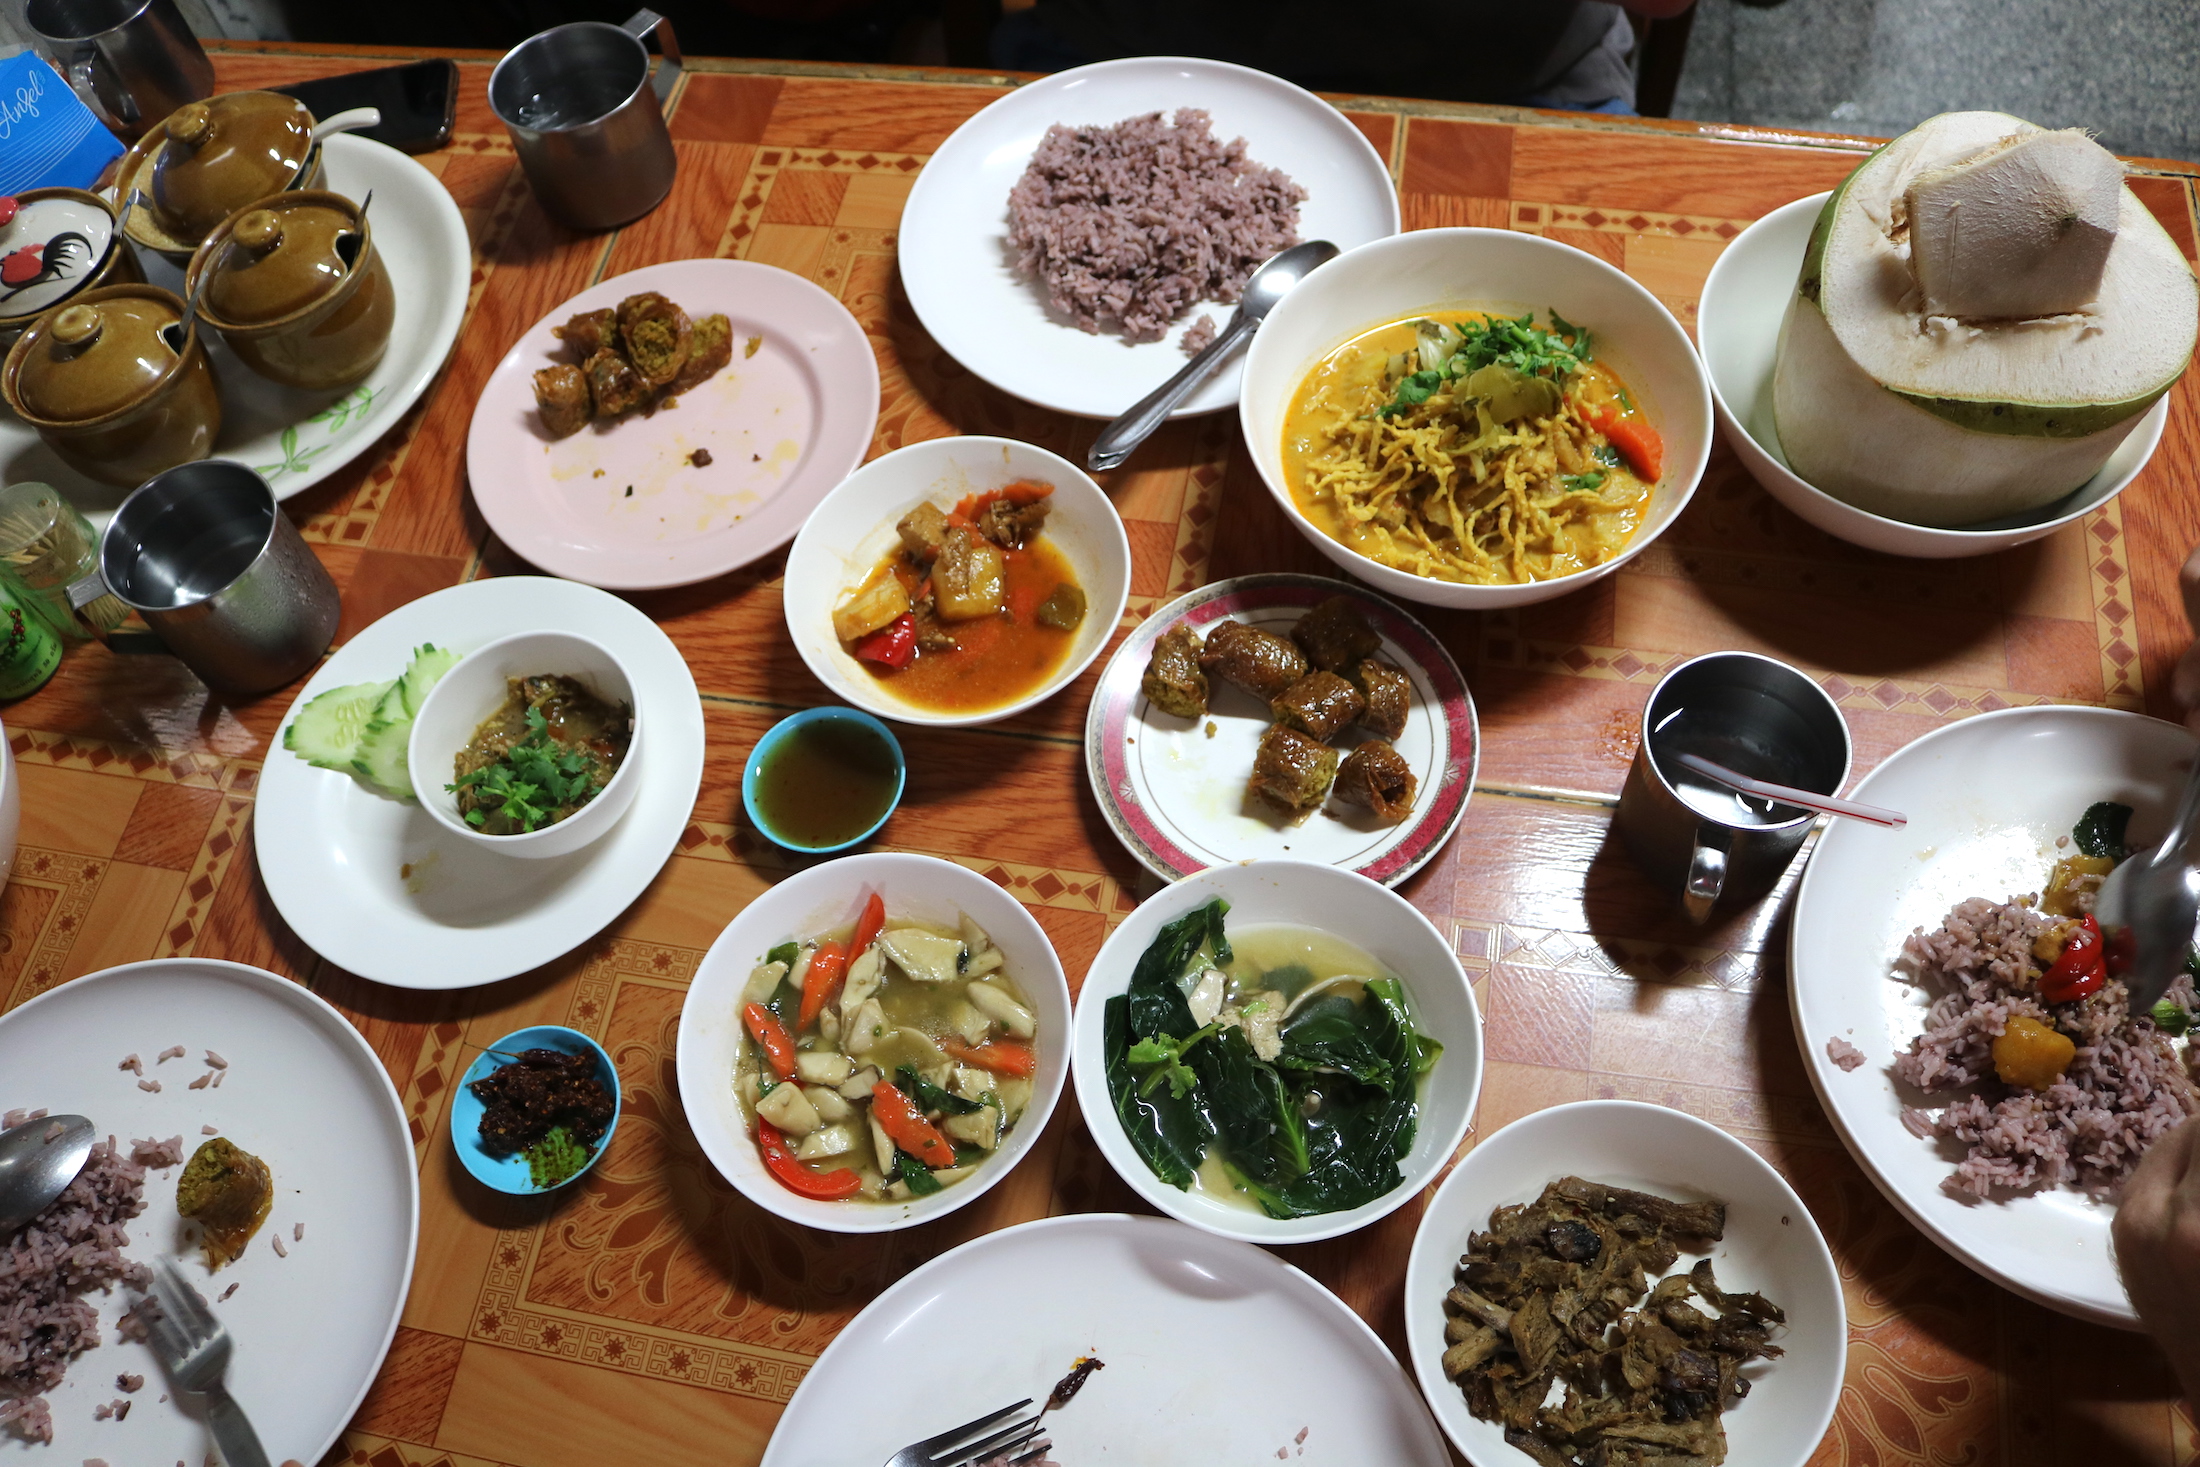 Thai Vegan Festival and Delicious ‘Jae’ Food (อาหารเจ) at “Ming Kwan Vegetarian”